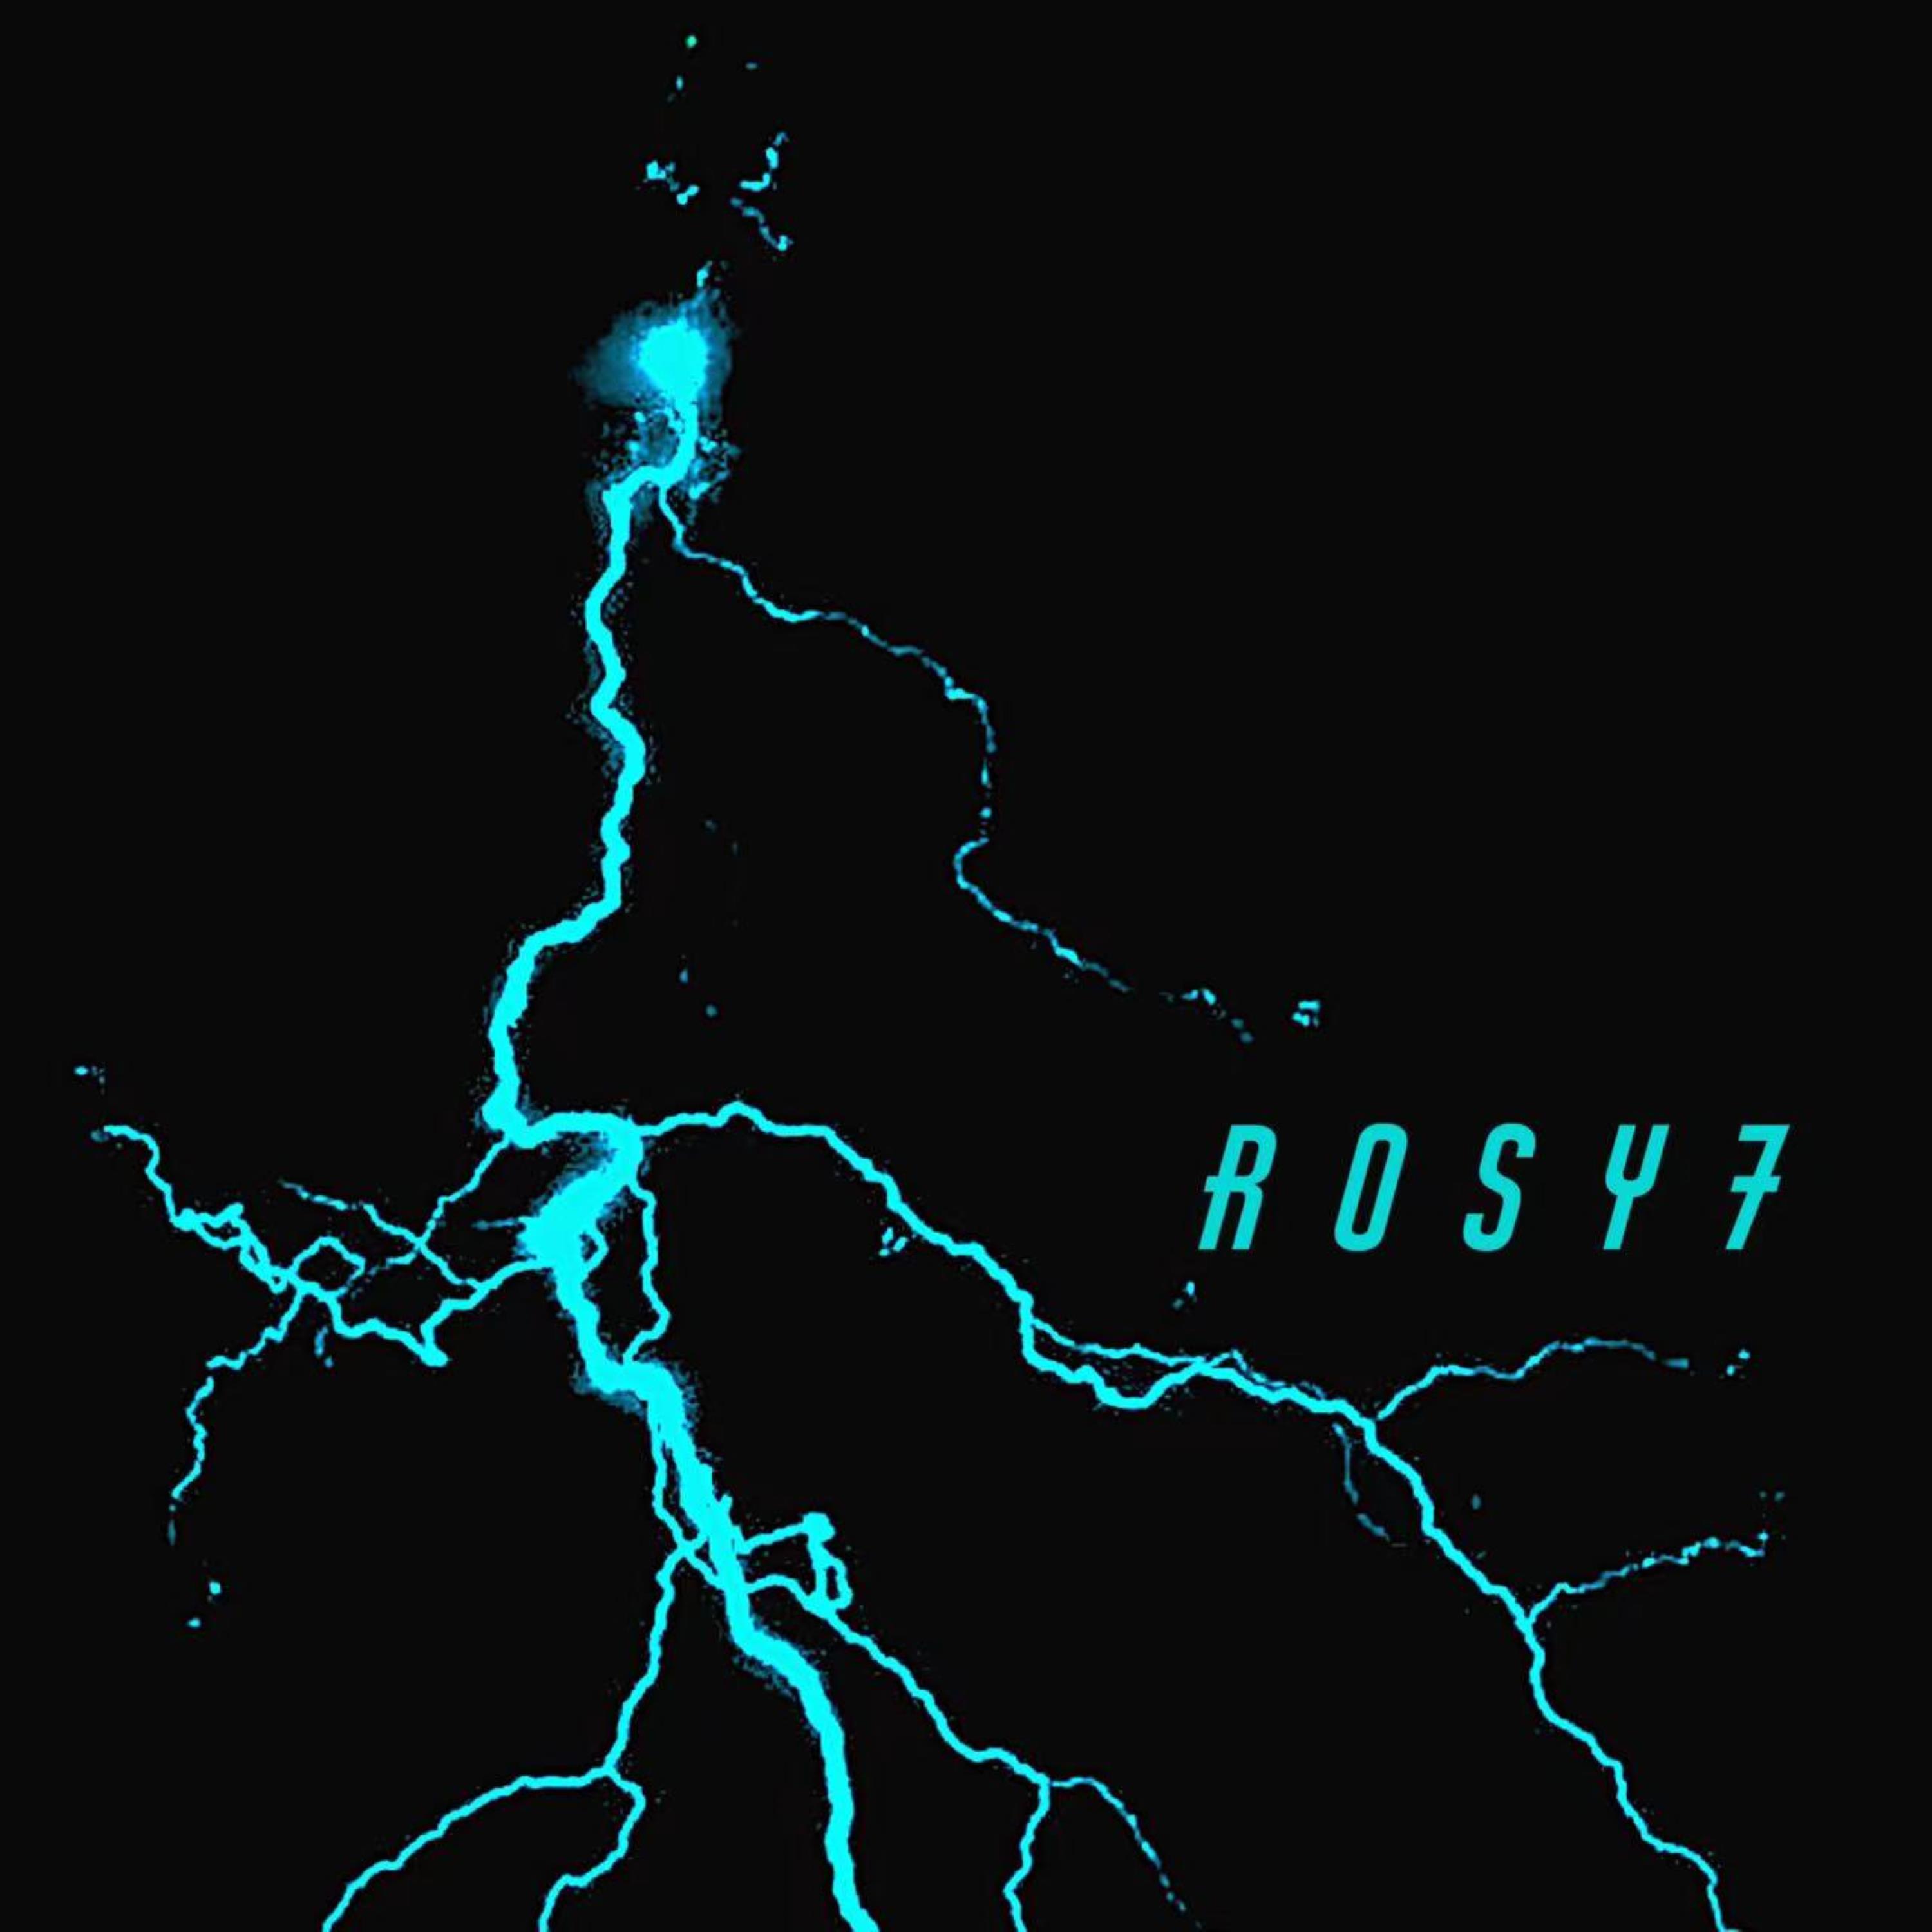 Постер альбома Rosy7